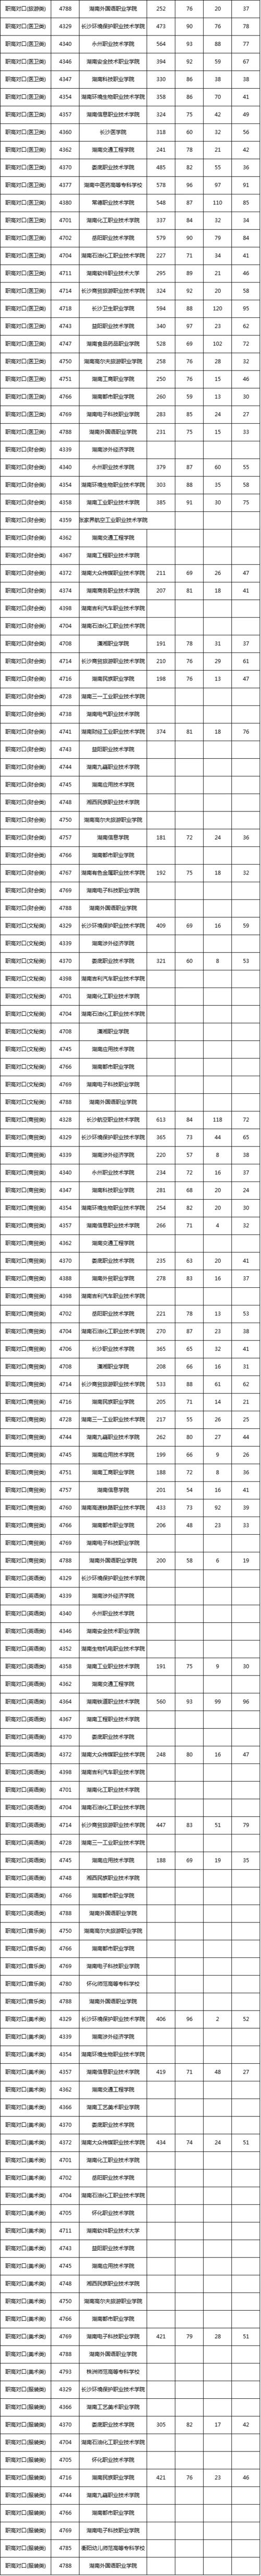 2020年湖南高职专科征集志愿时间什么时候 湖南高职专科排名